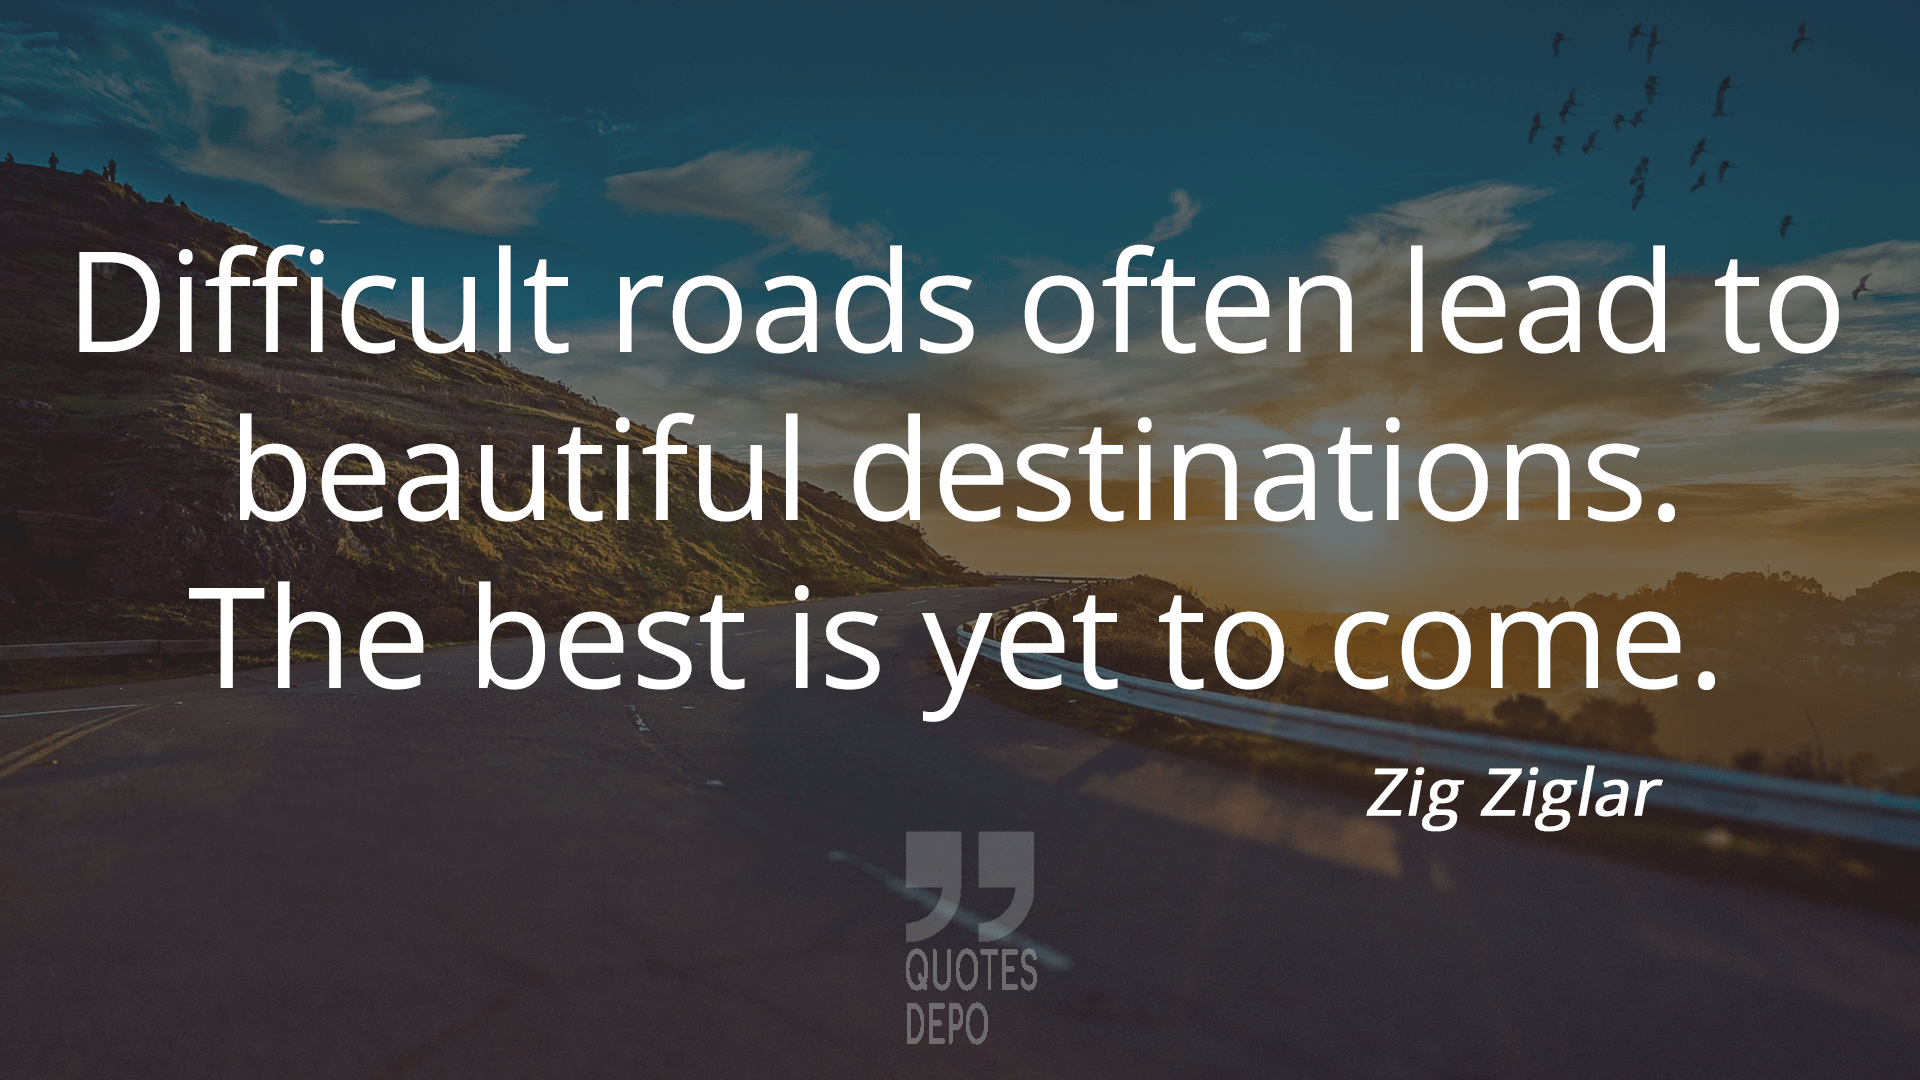 difficult roads often lead to beautiful destinations - zig ziglar quotes